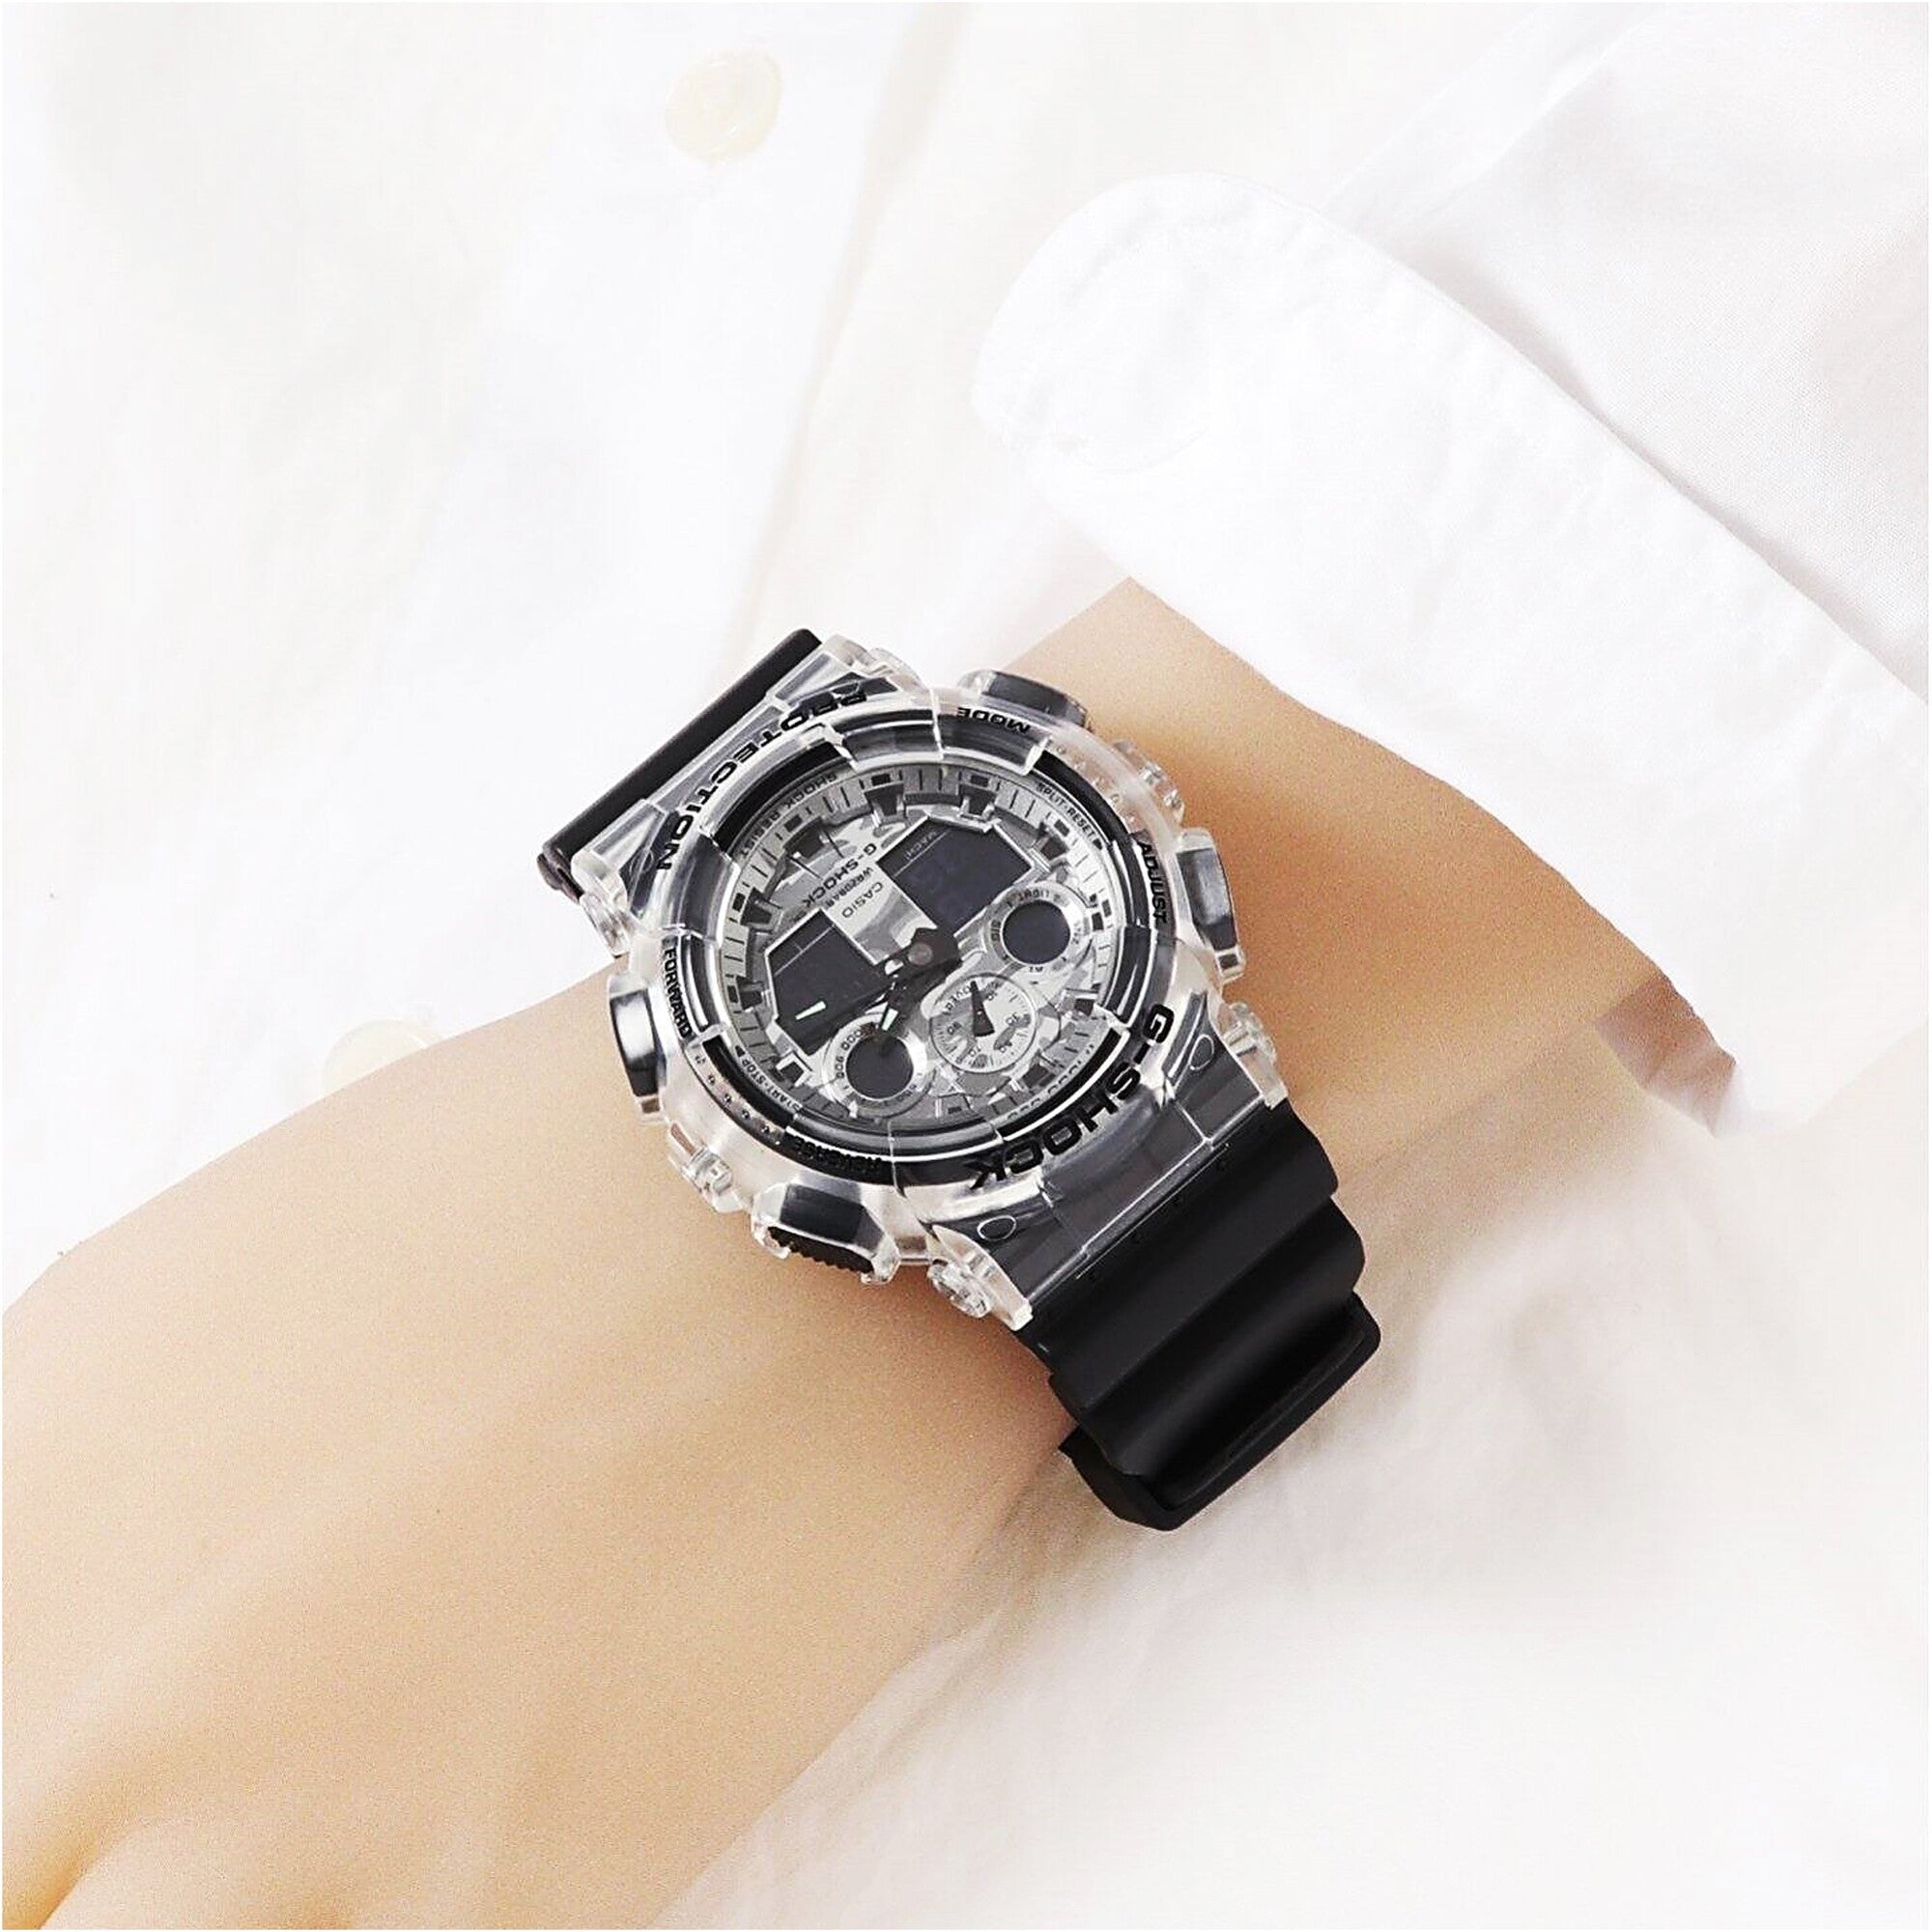 ダイバーズタイプ HONHX アウトドア白 新品未使用 3気圧防水腕時計 メーカー公式ショップ - 時計